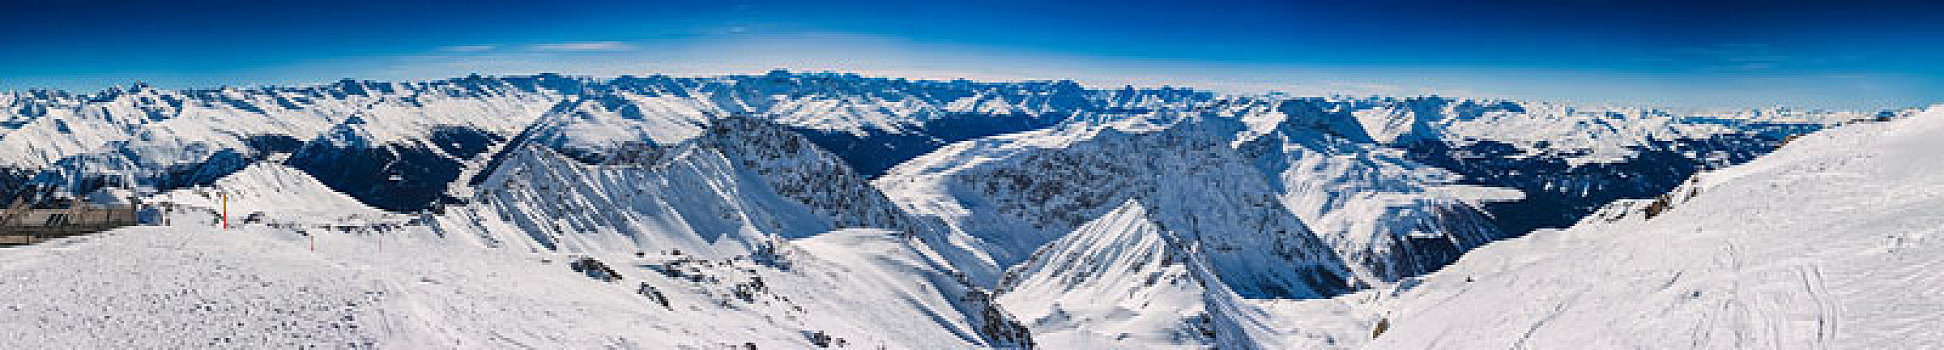 积雪,阿尔卑斯山,达沃斯,瑞士